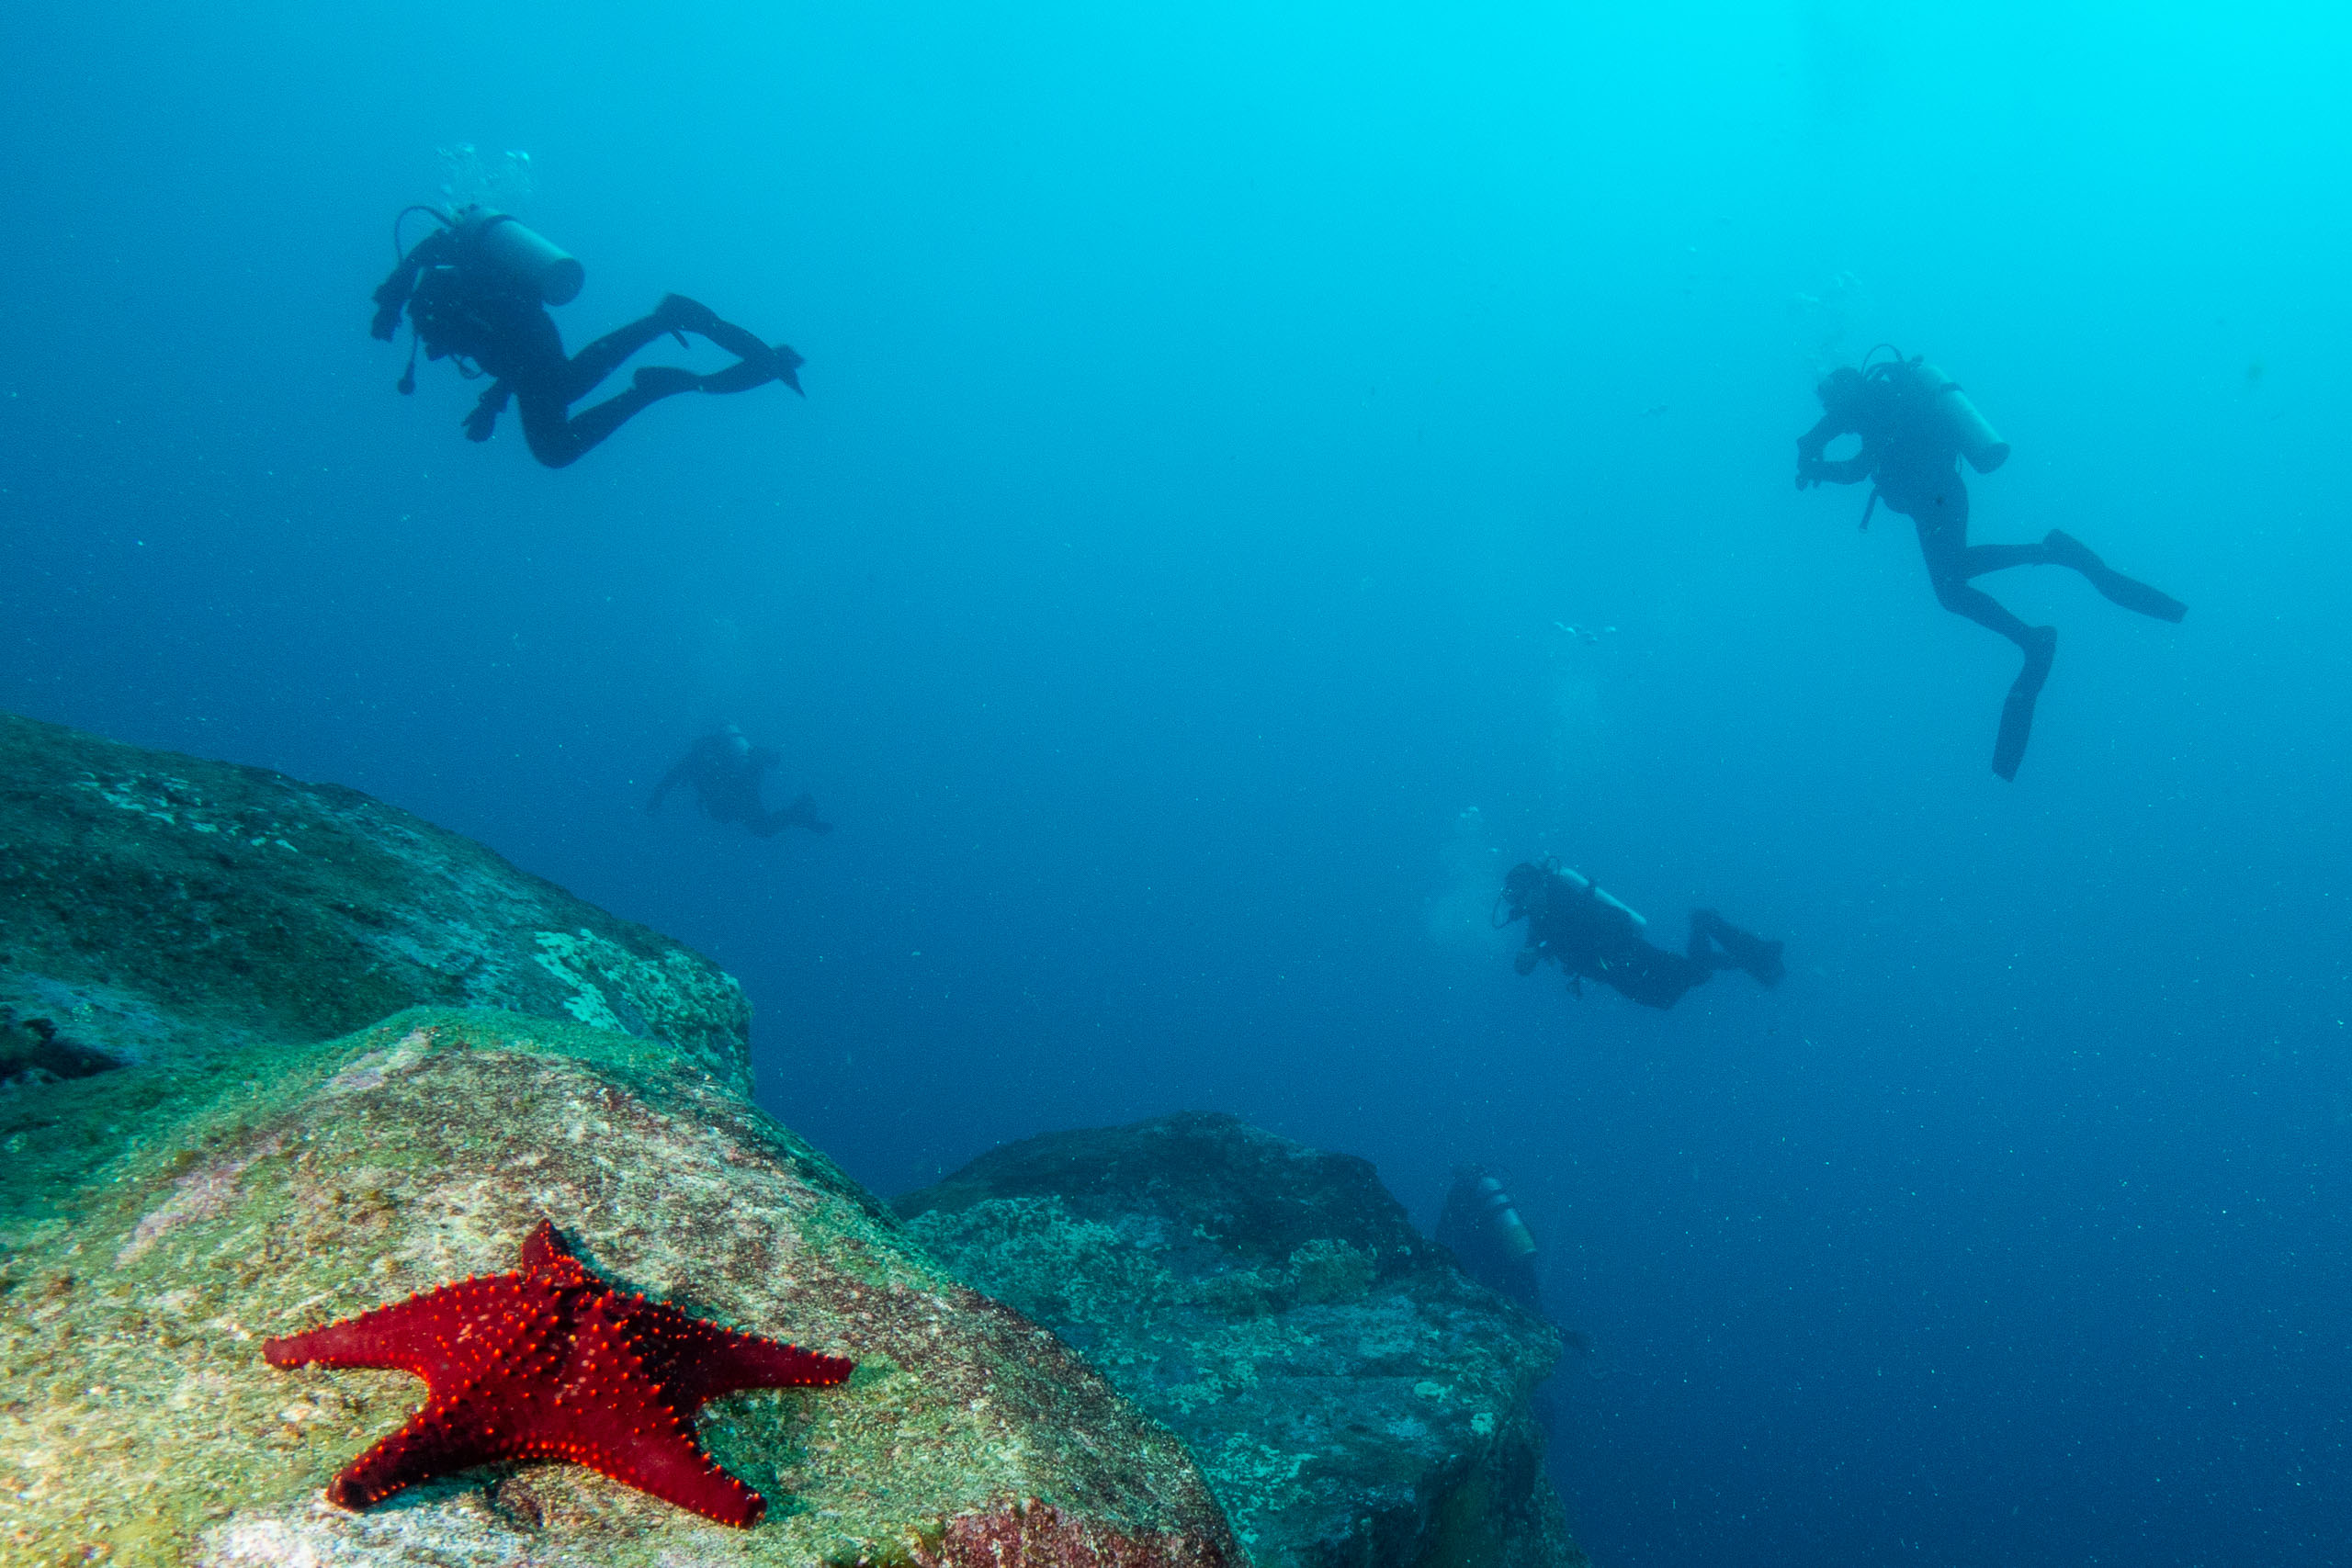 Personnalisez votre voyage avec Diving Experience